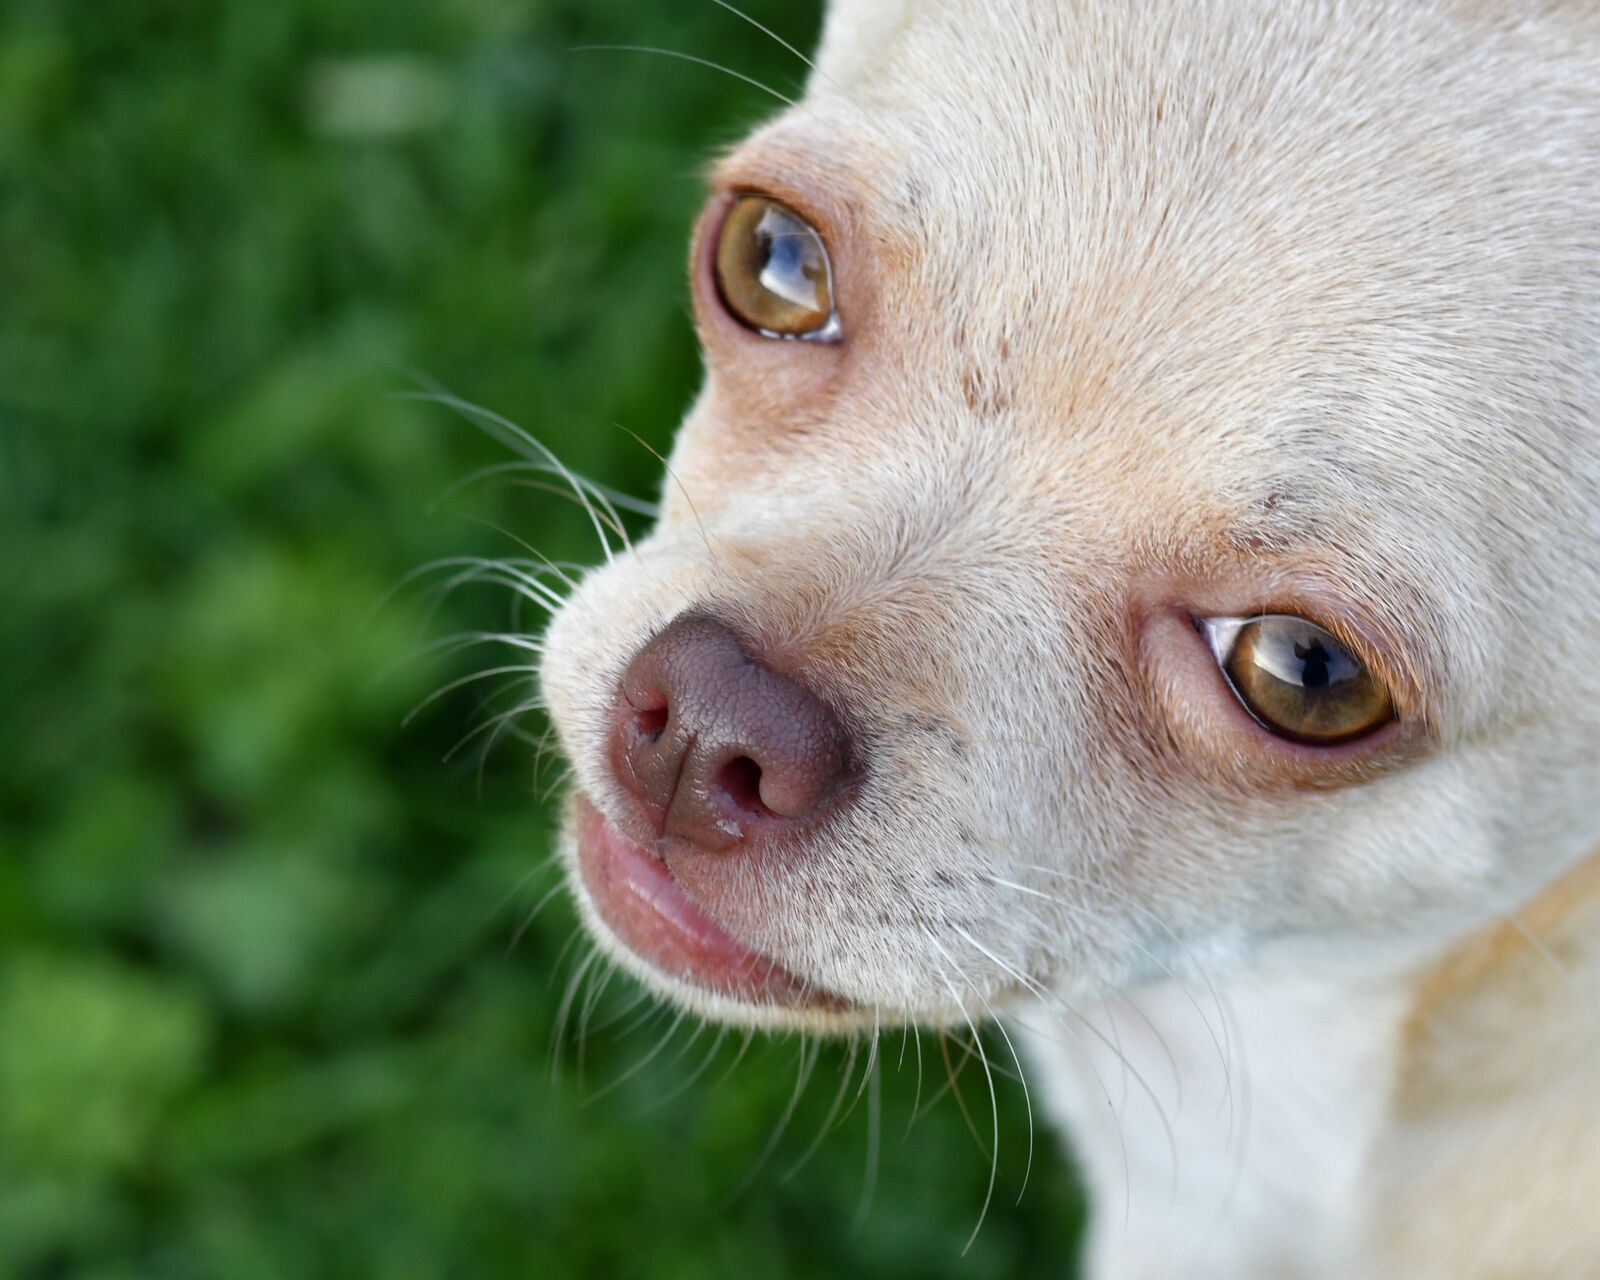 Nikon D500 sample photo. Dog, chihuahua, close up photography